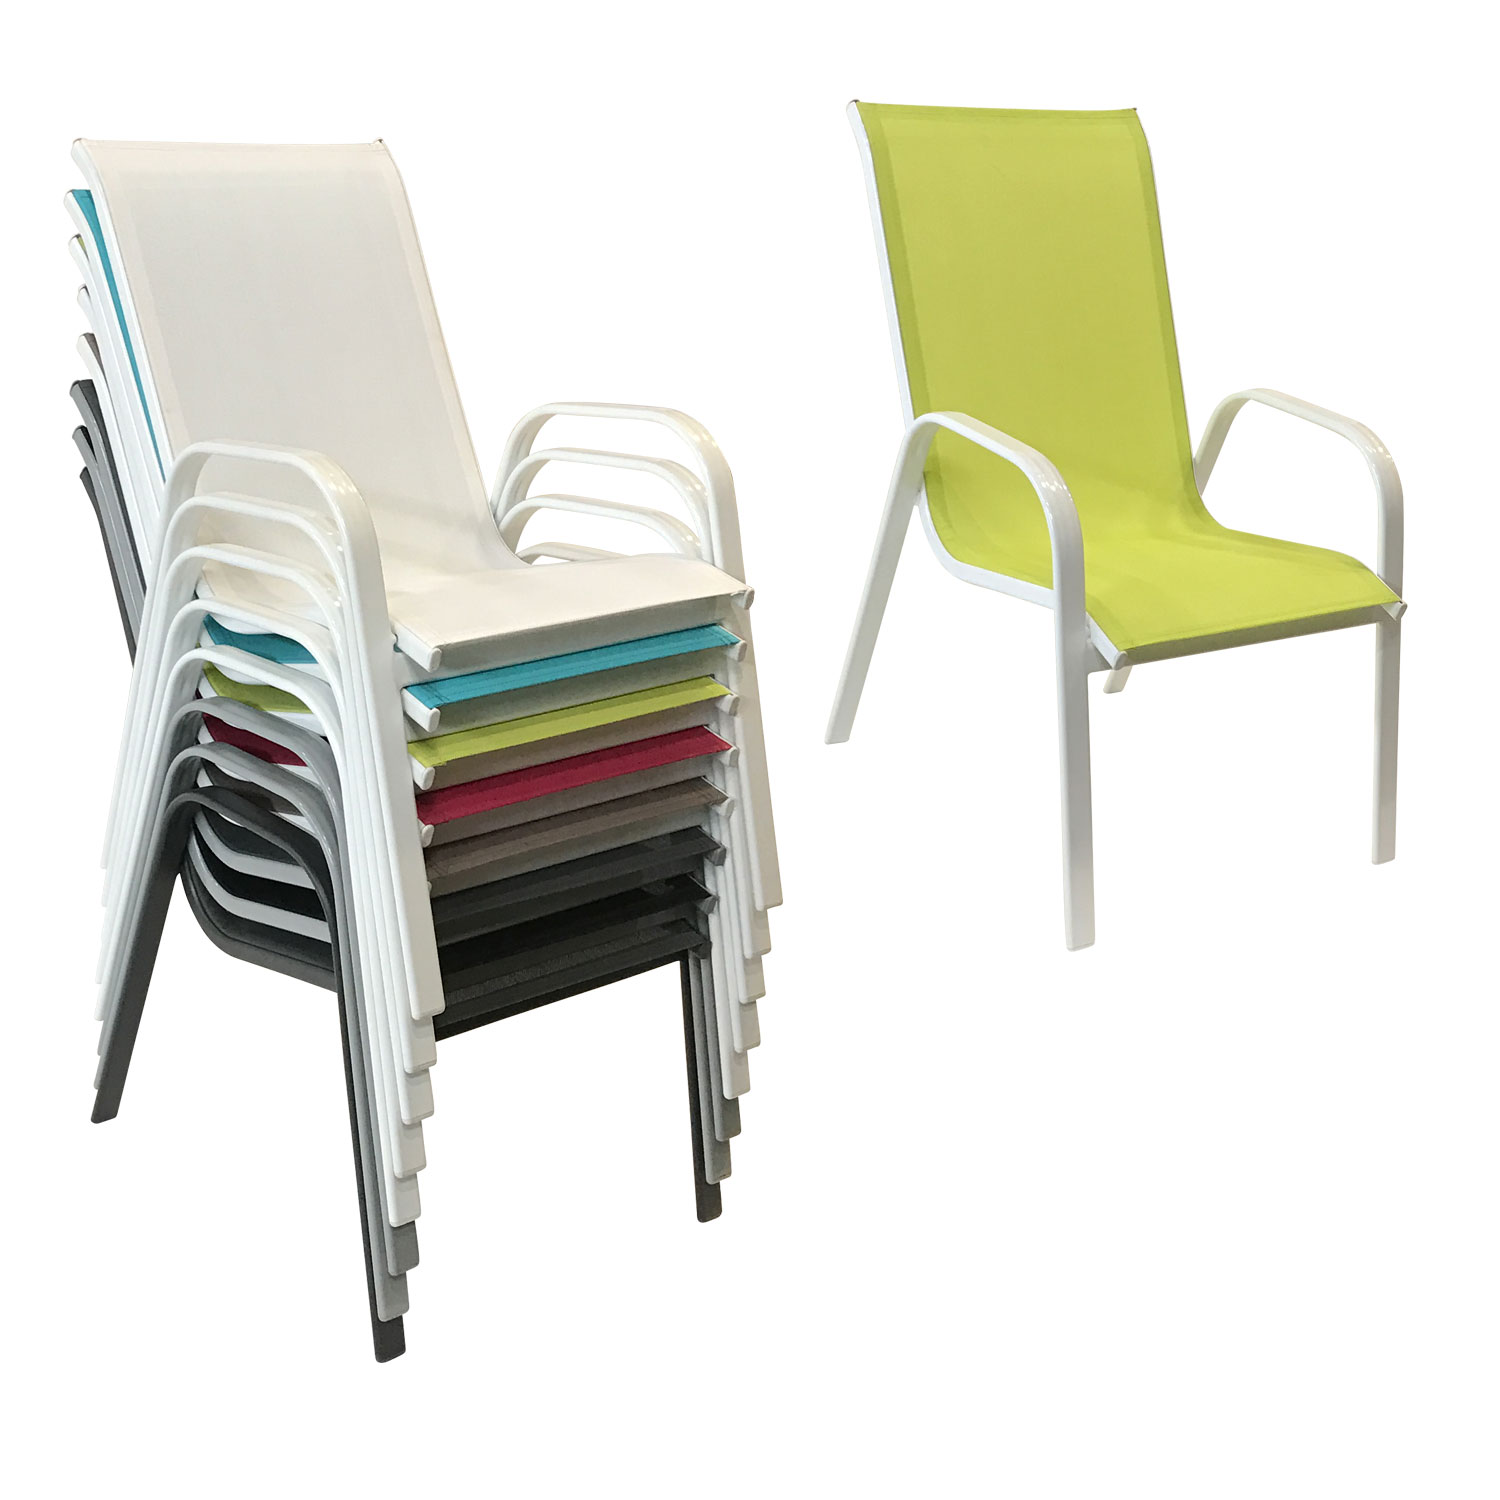 Lote de 4 sillas MARBELLA en textileno verde - aluminio blanco